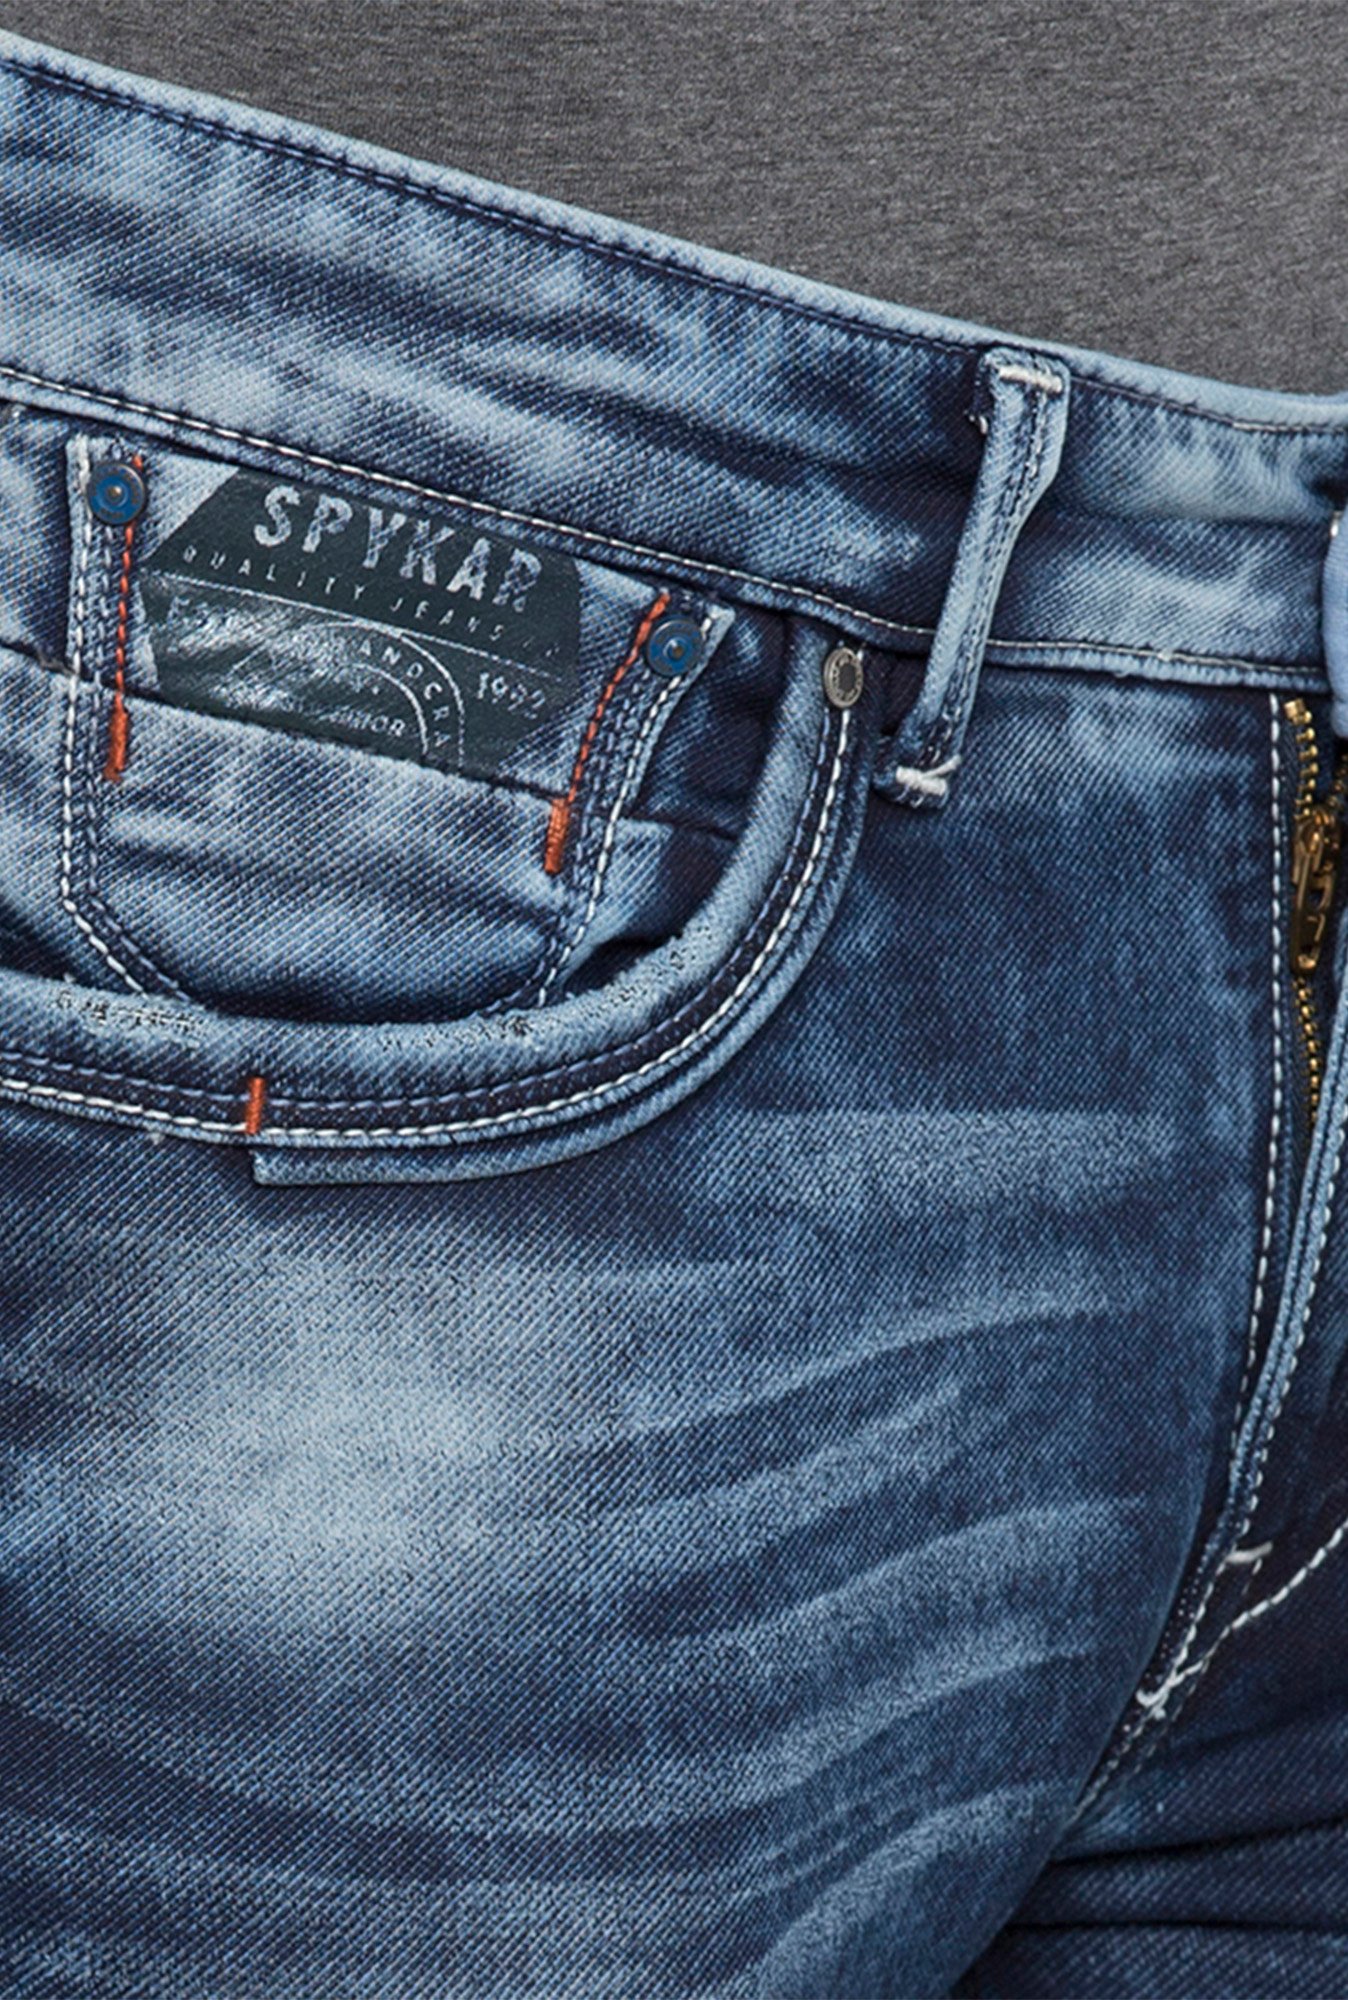 Update more than 71 spykar jeans logo super hot - ceg.edu.vn